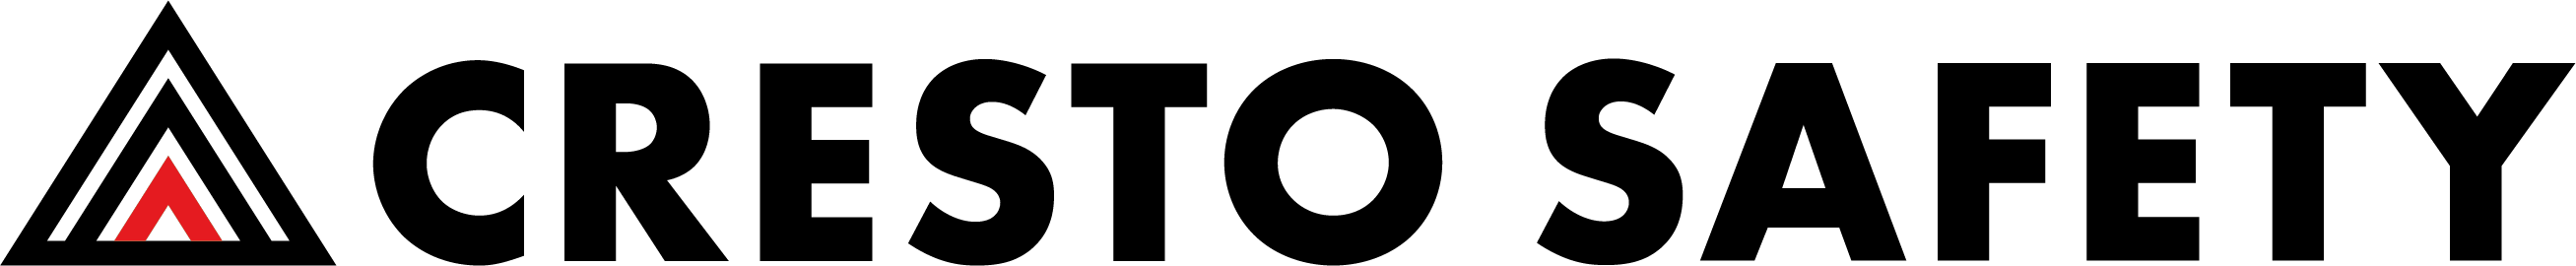 Cresto Safety logo